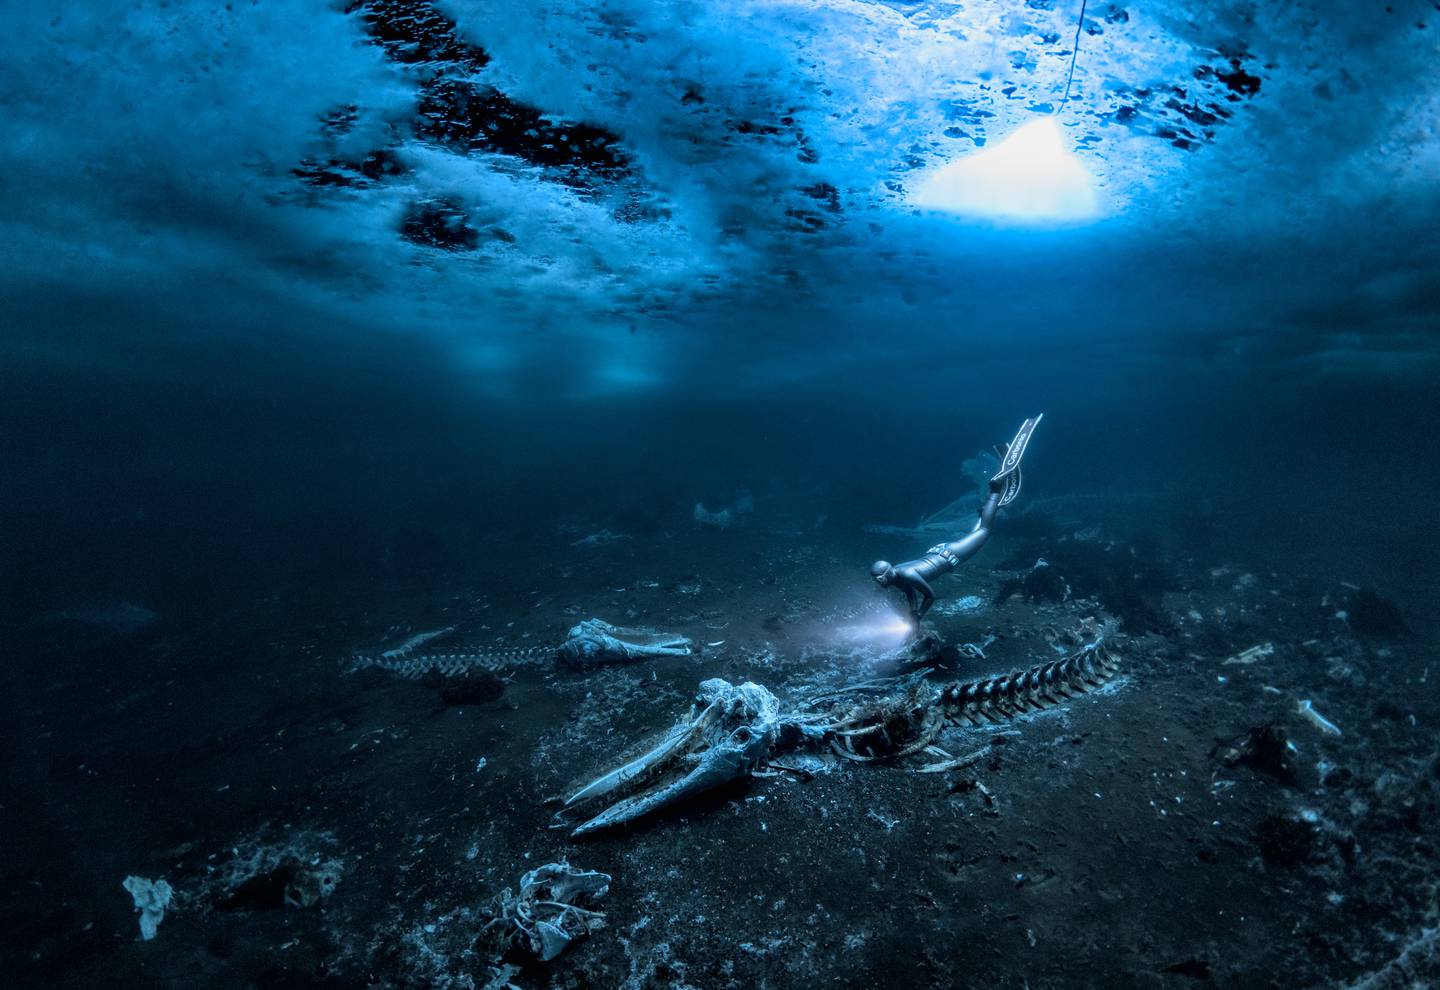 鲸鱼骨头。 照片/亚历克斯·道森